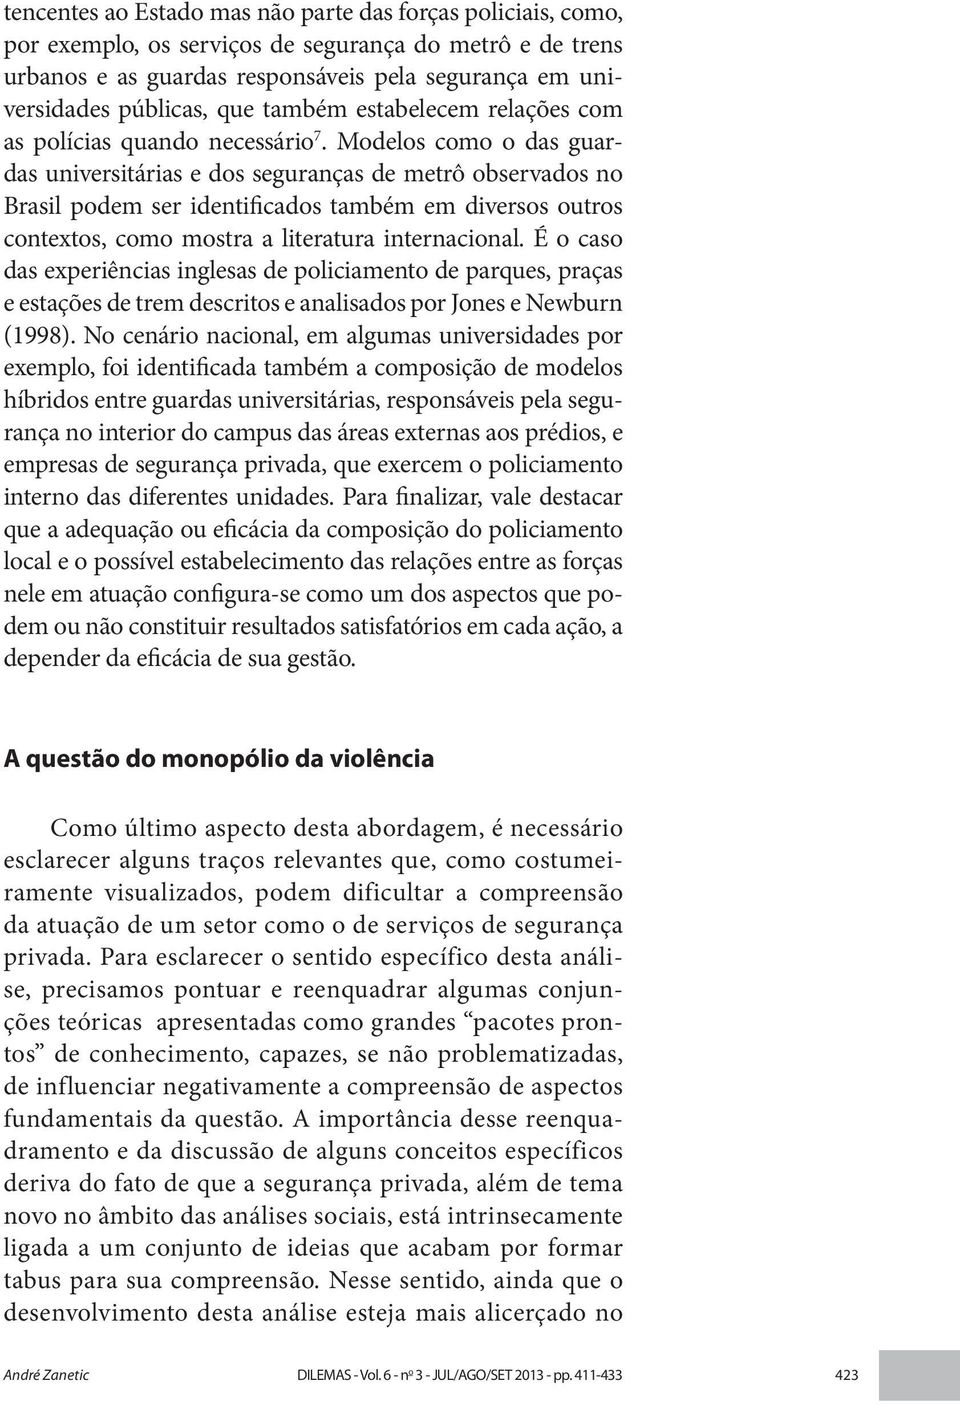 Modelos como o das guardas universitárias e dos seguranças de metrô observados no Brasil podem ser identificados também em diversos outros contextos, como mostra a literatura internacional.